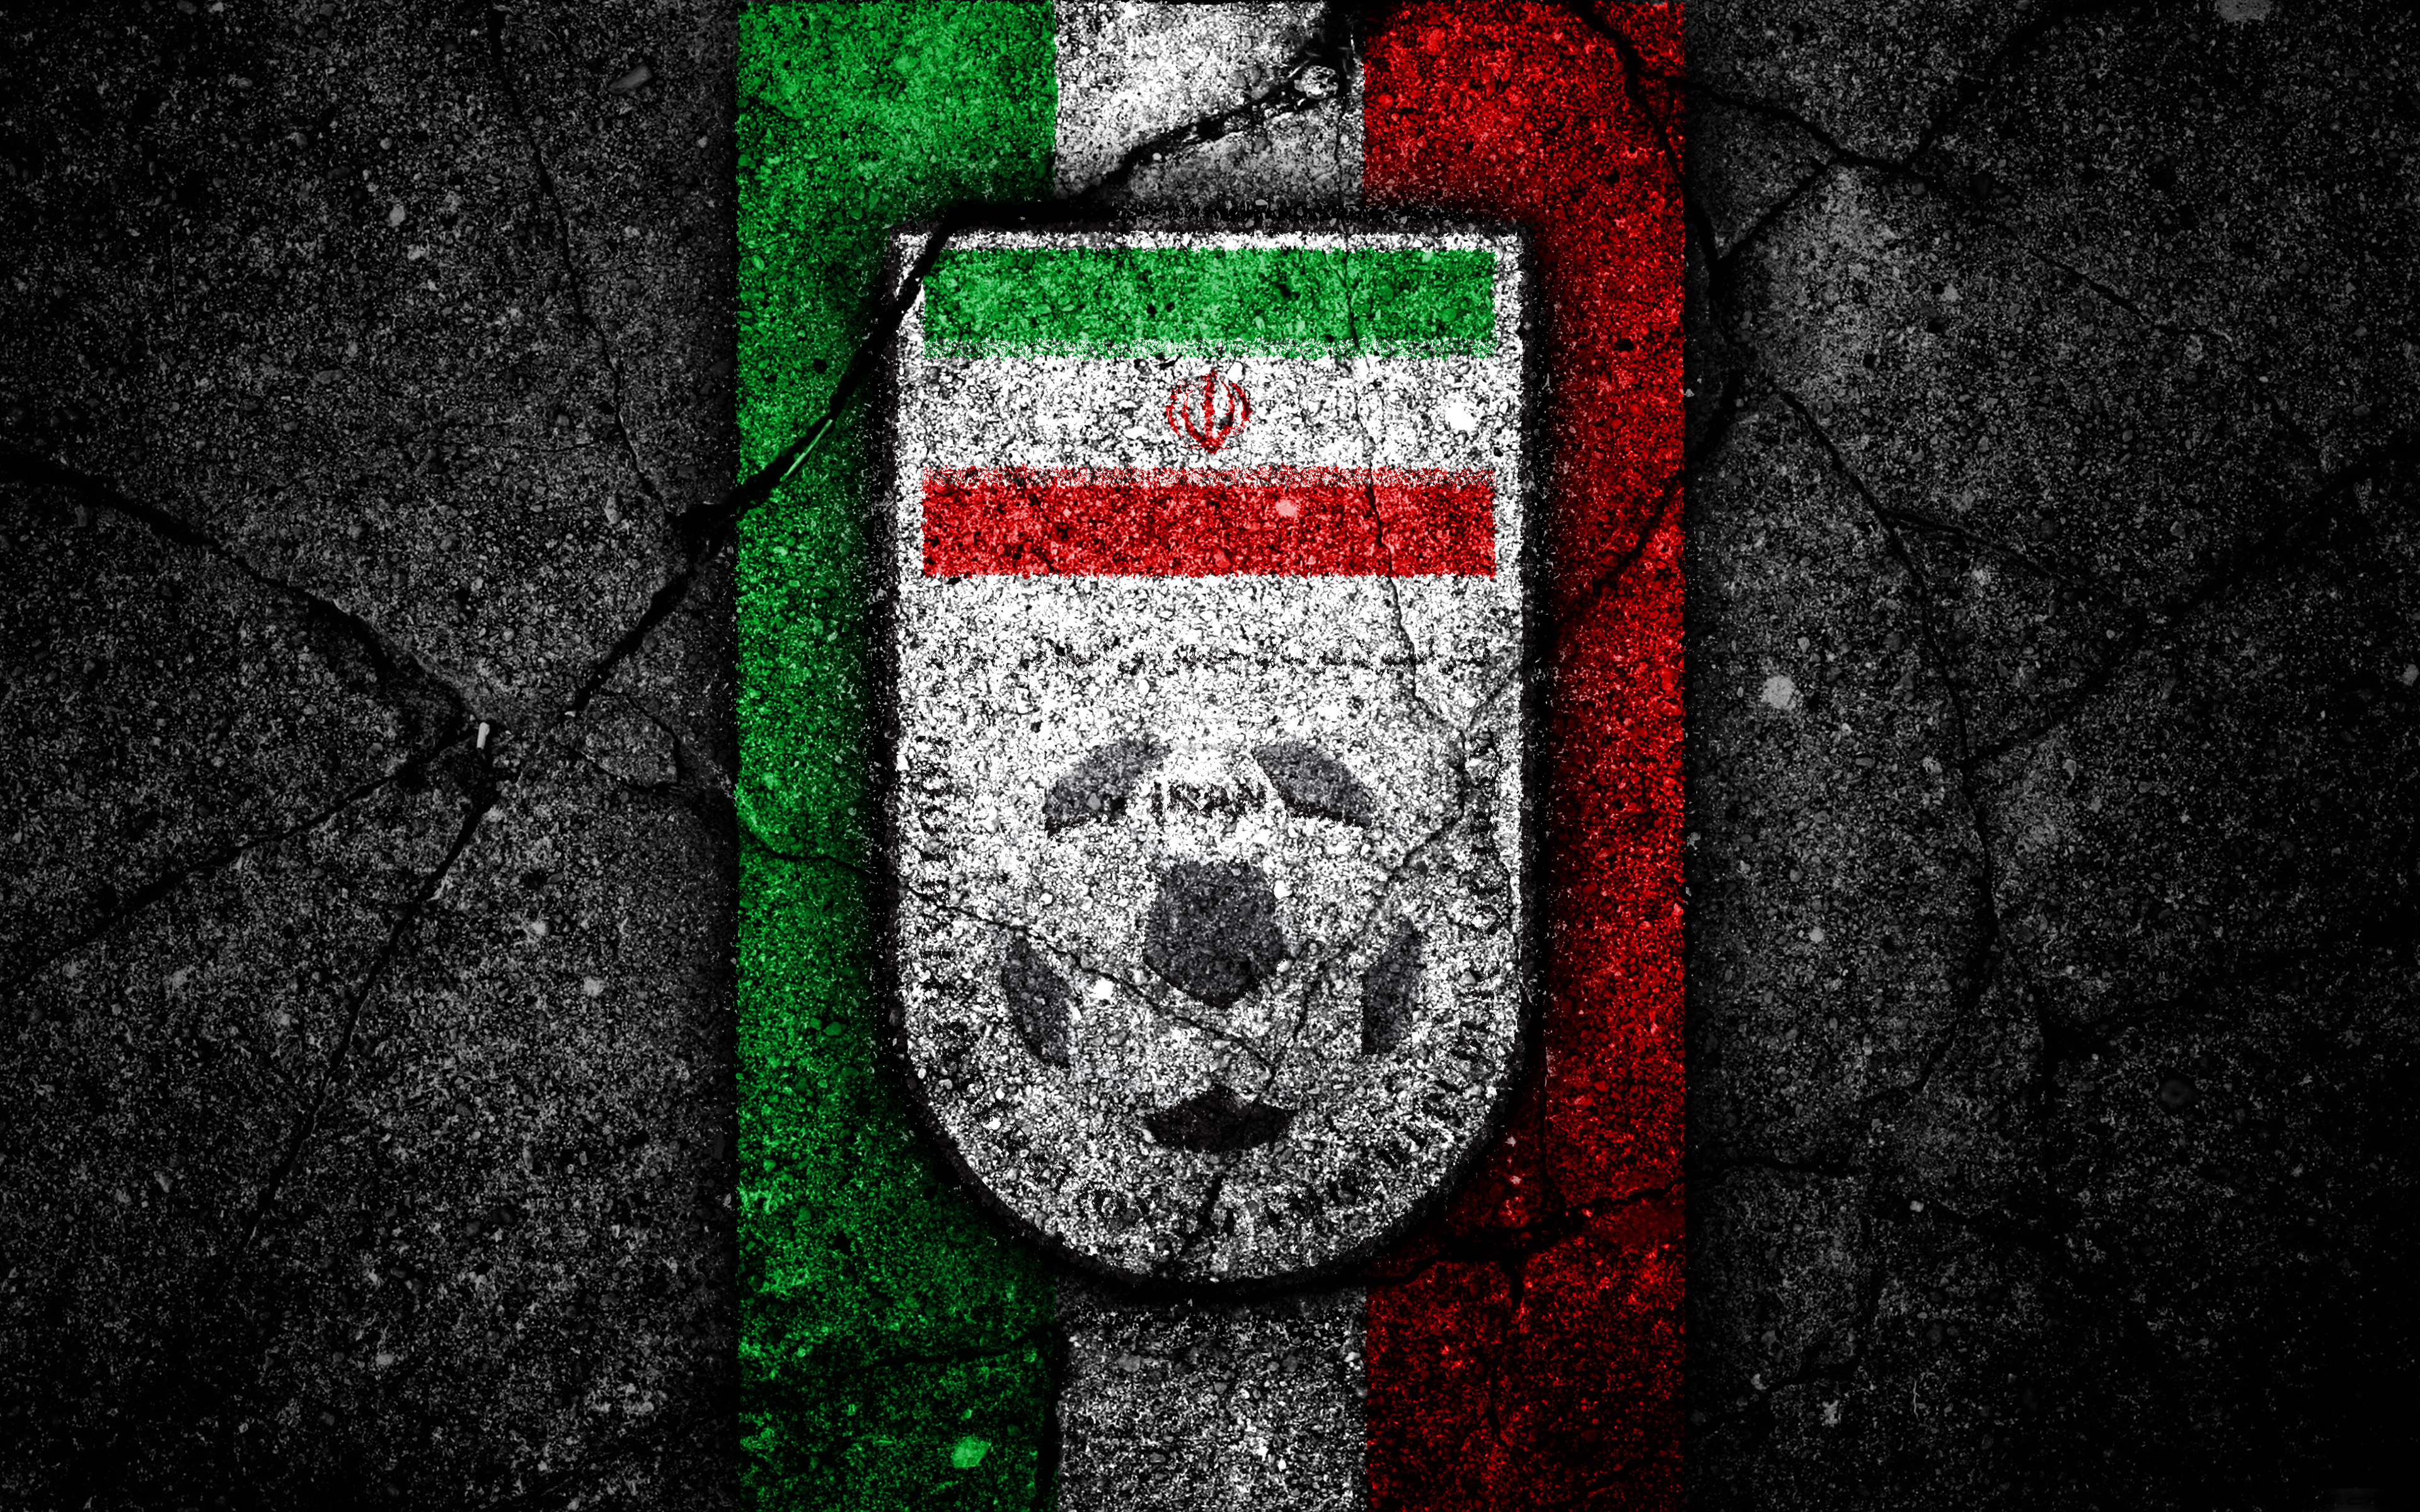 Скачать обои Сборная Ирана По Футболу на телефон бесплатно